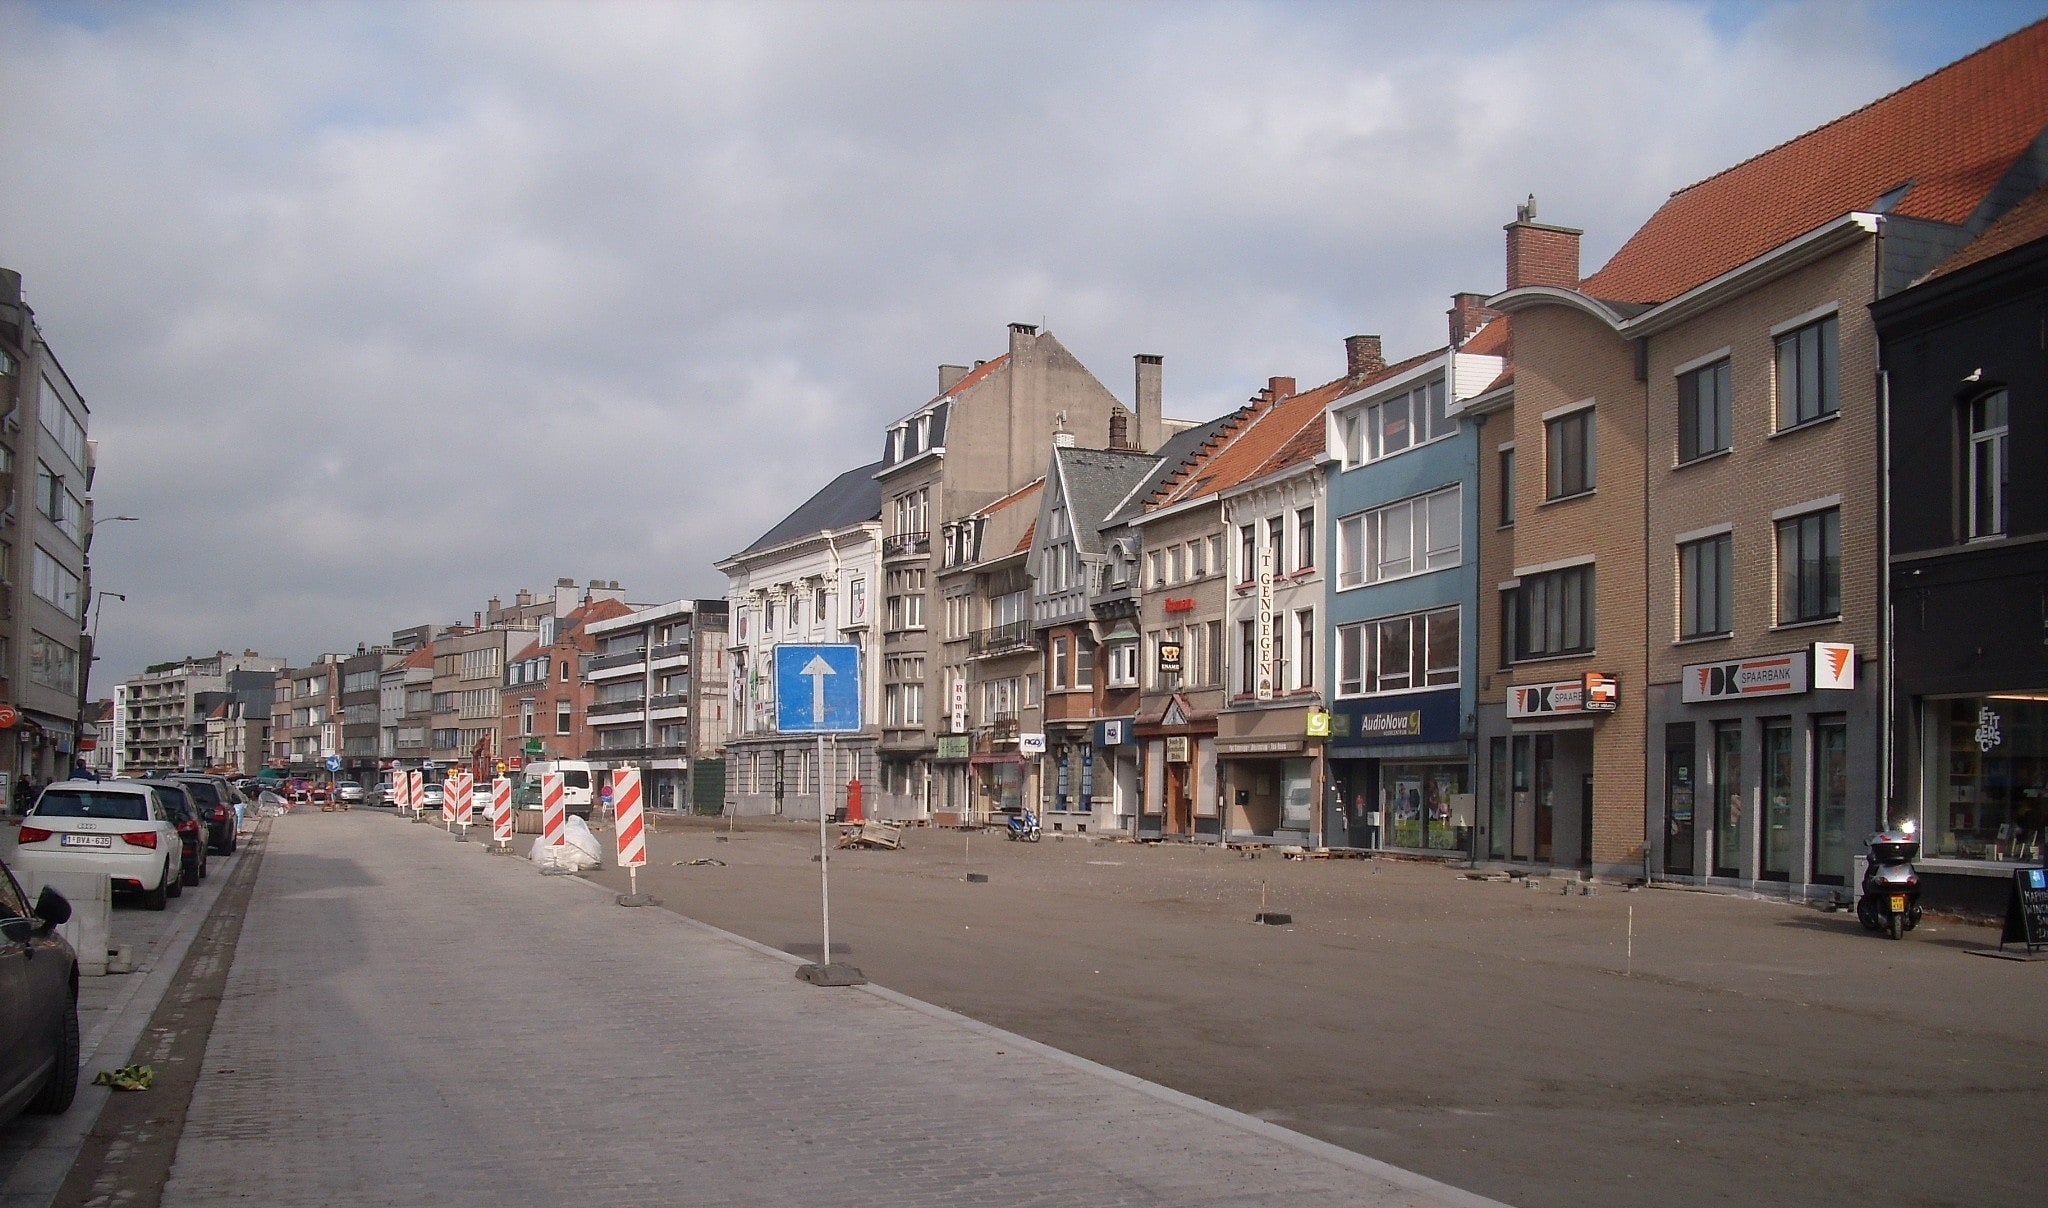 Deinze, Belgium